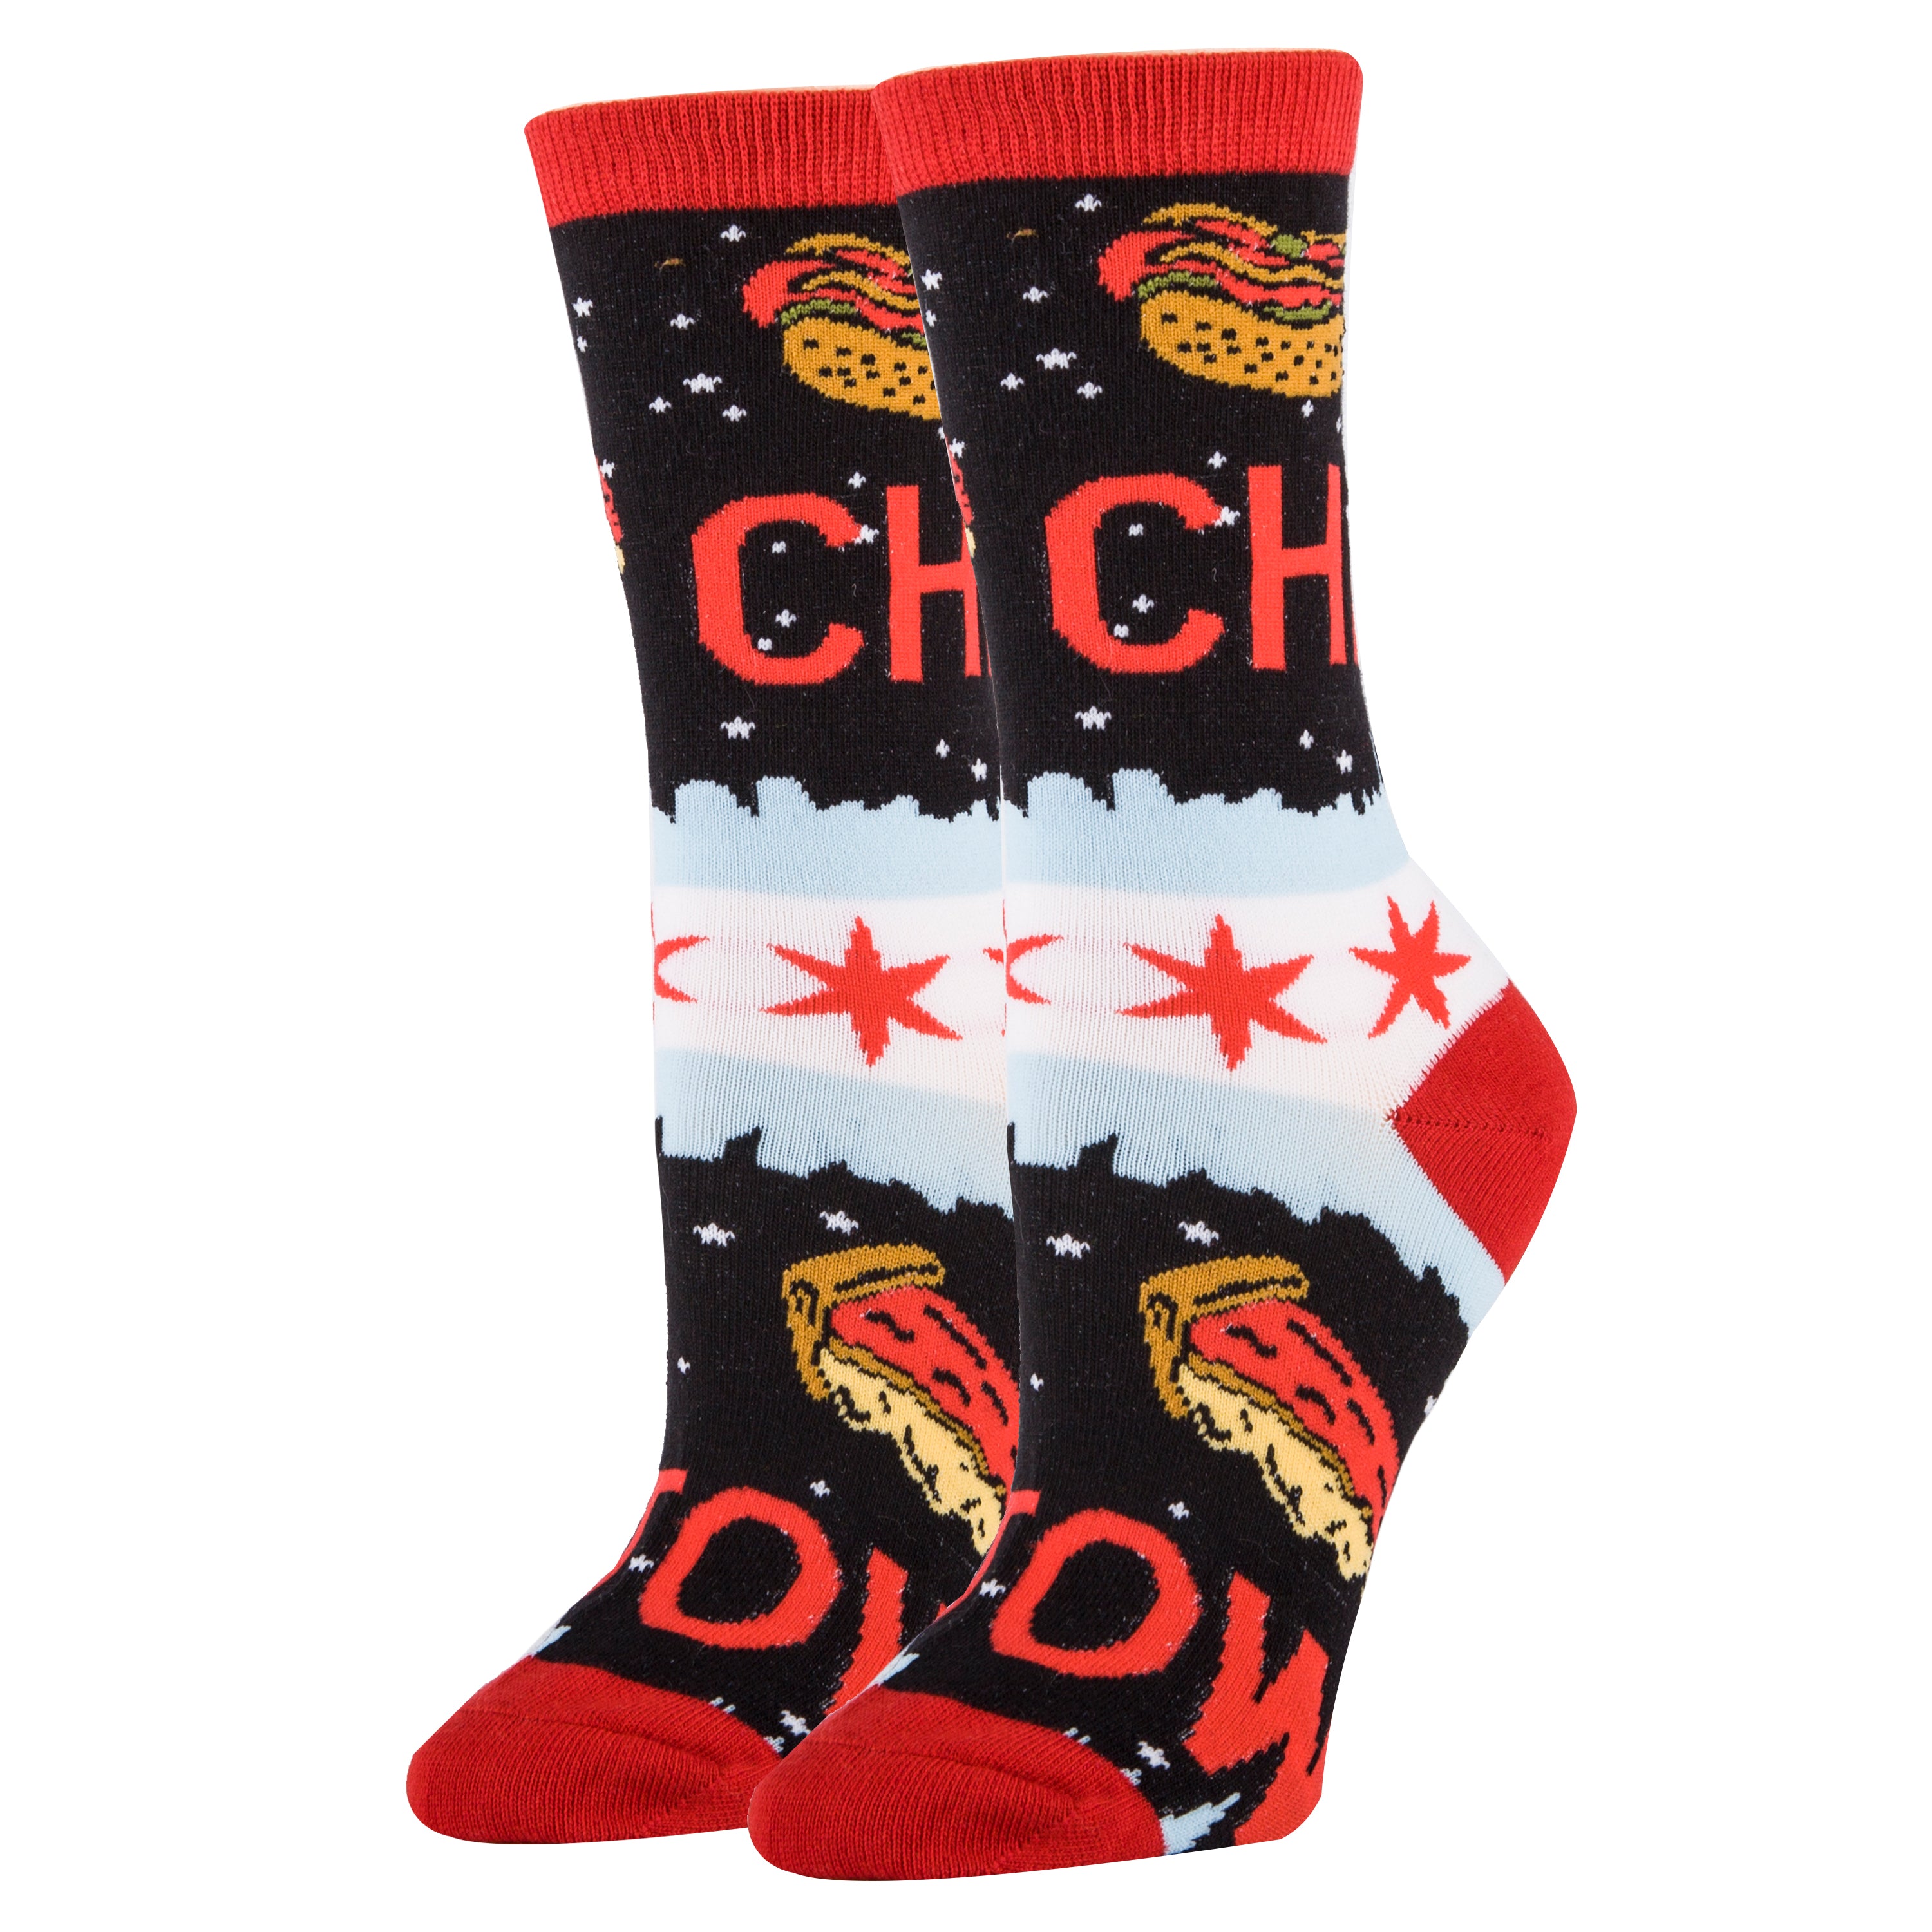 CHI Town Socks | Novelty Crew Socks For Women